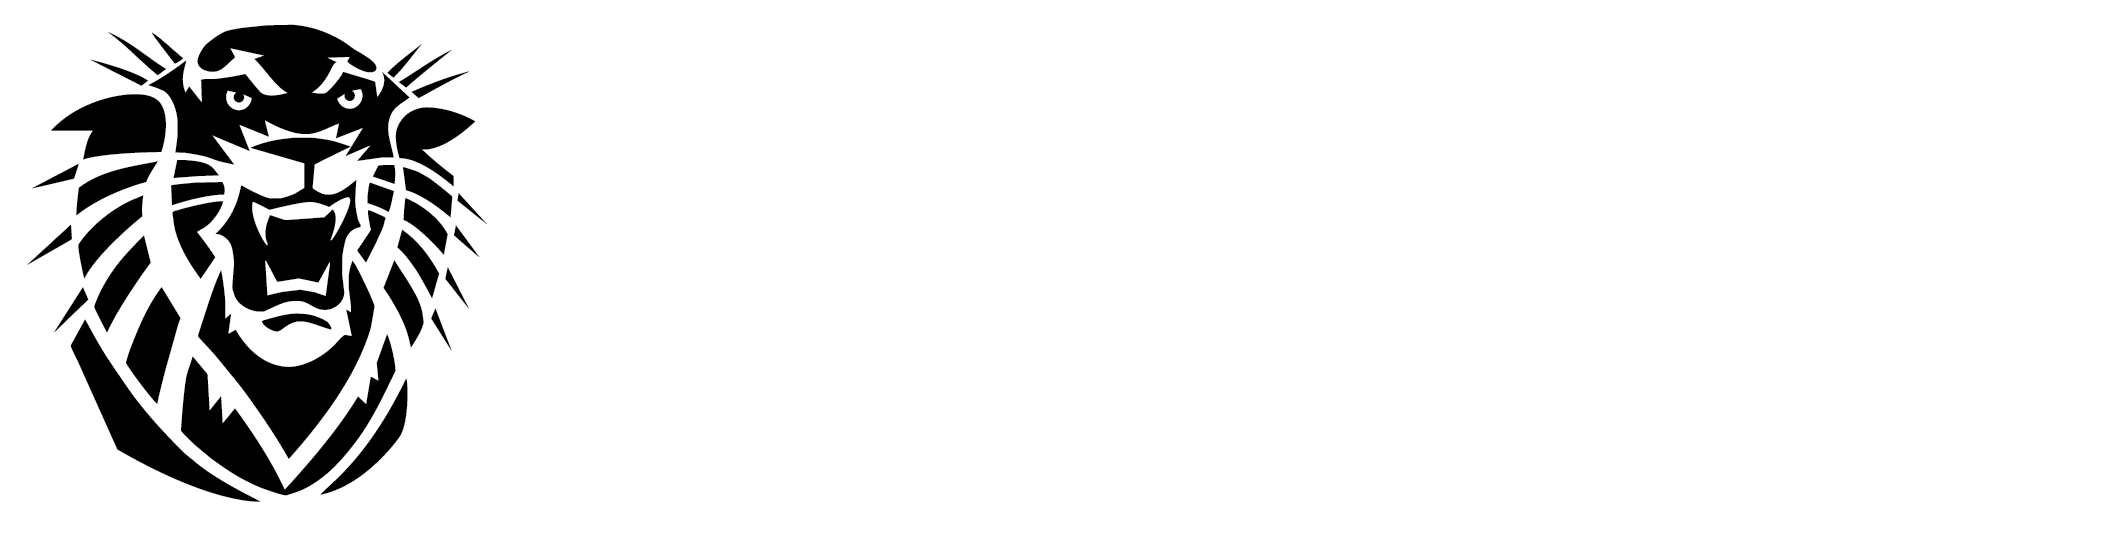 FHSU department logo - white - stacked